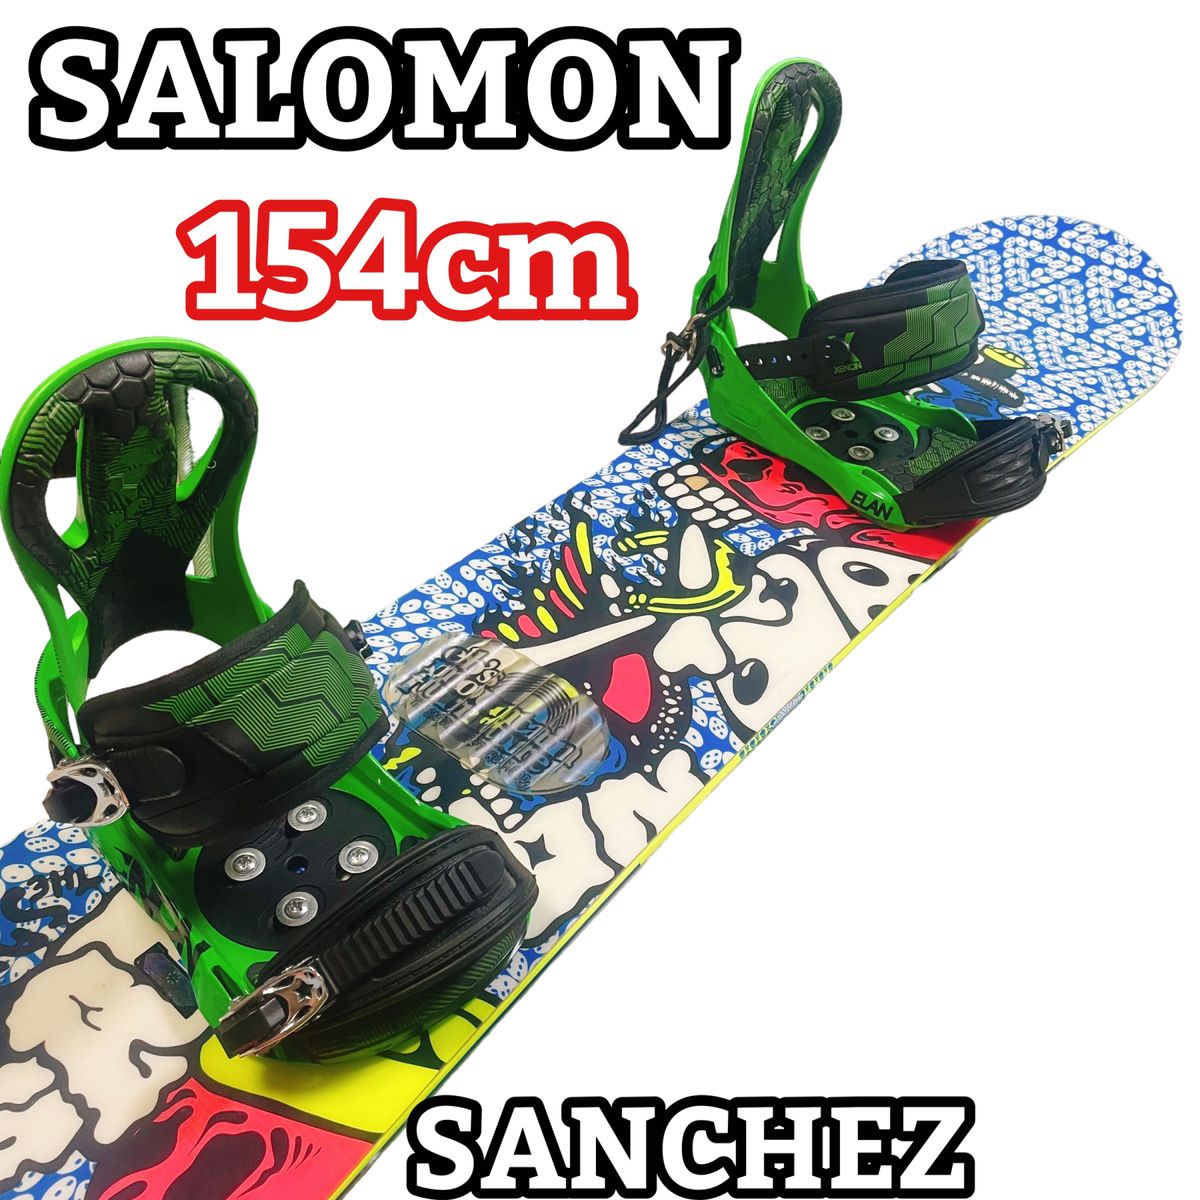 【美品】 SALOMON SANCHEZ 154cm スノーボードセット ビンディング ELAN XENON Mサイズ